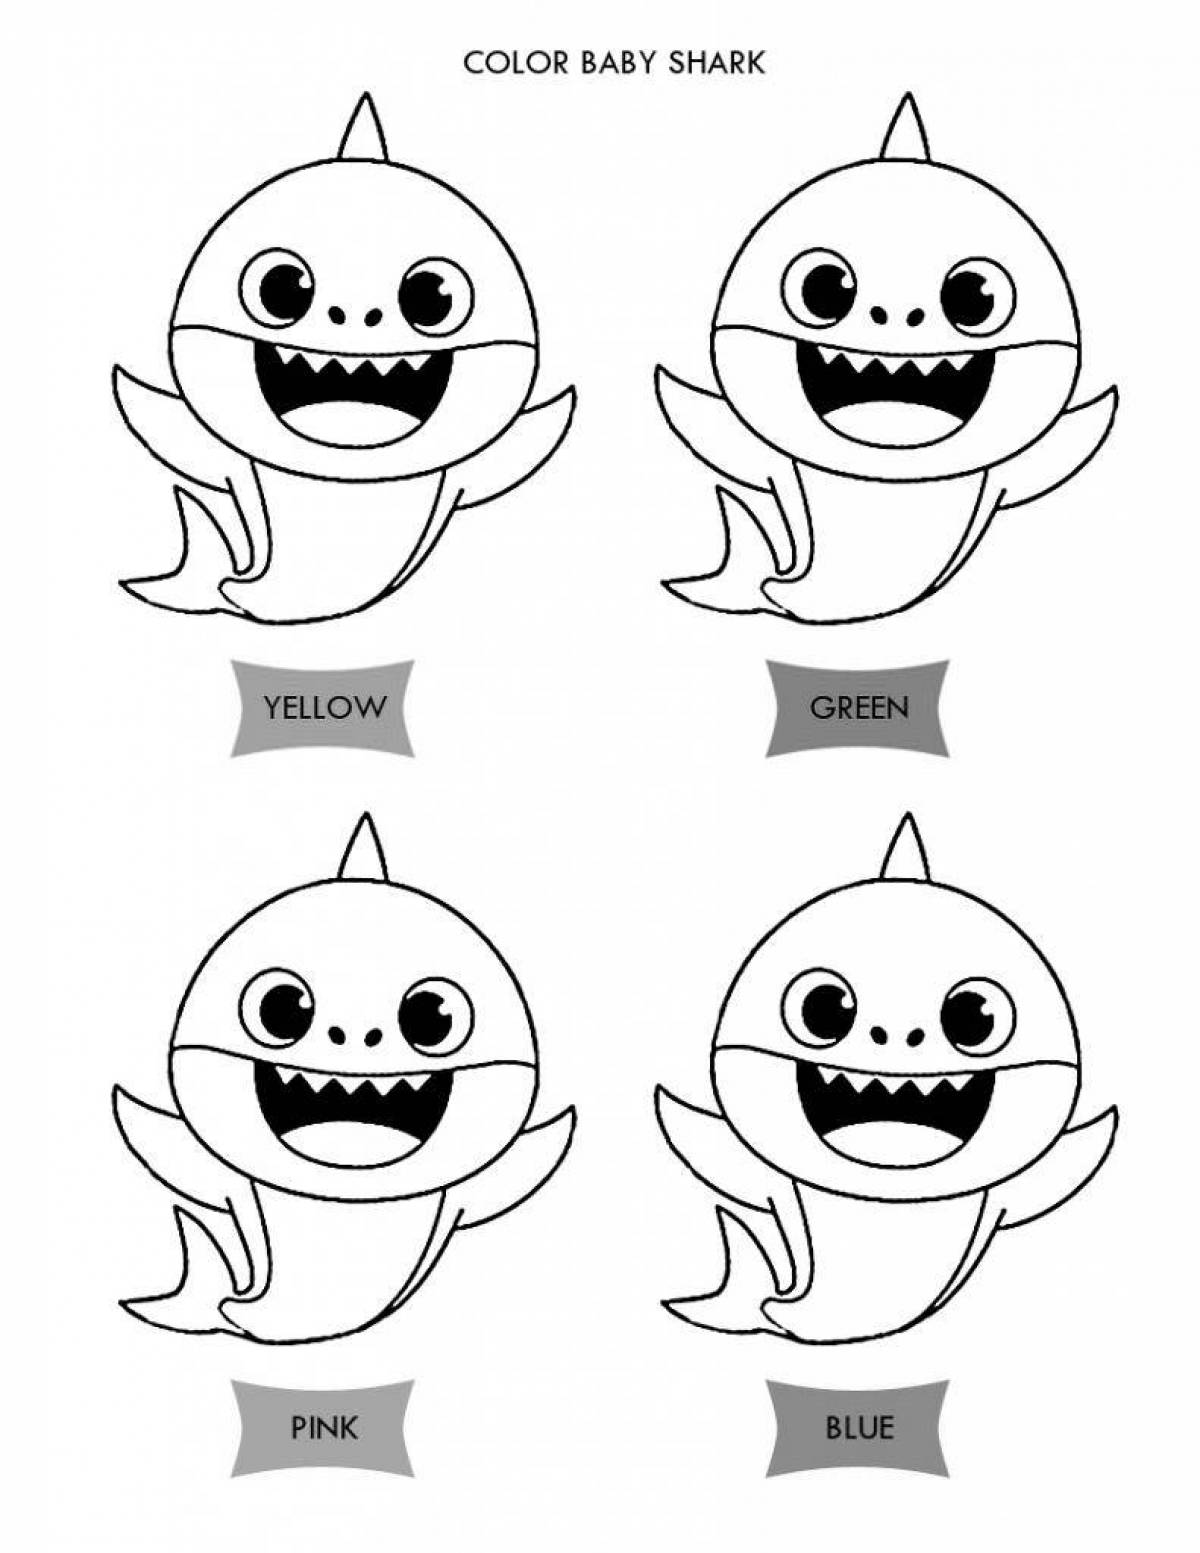 Fun shark coloring book for kids